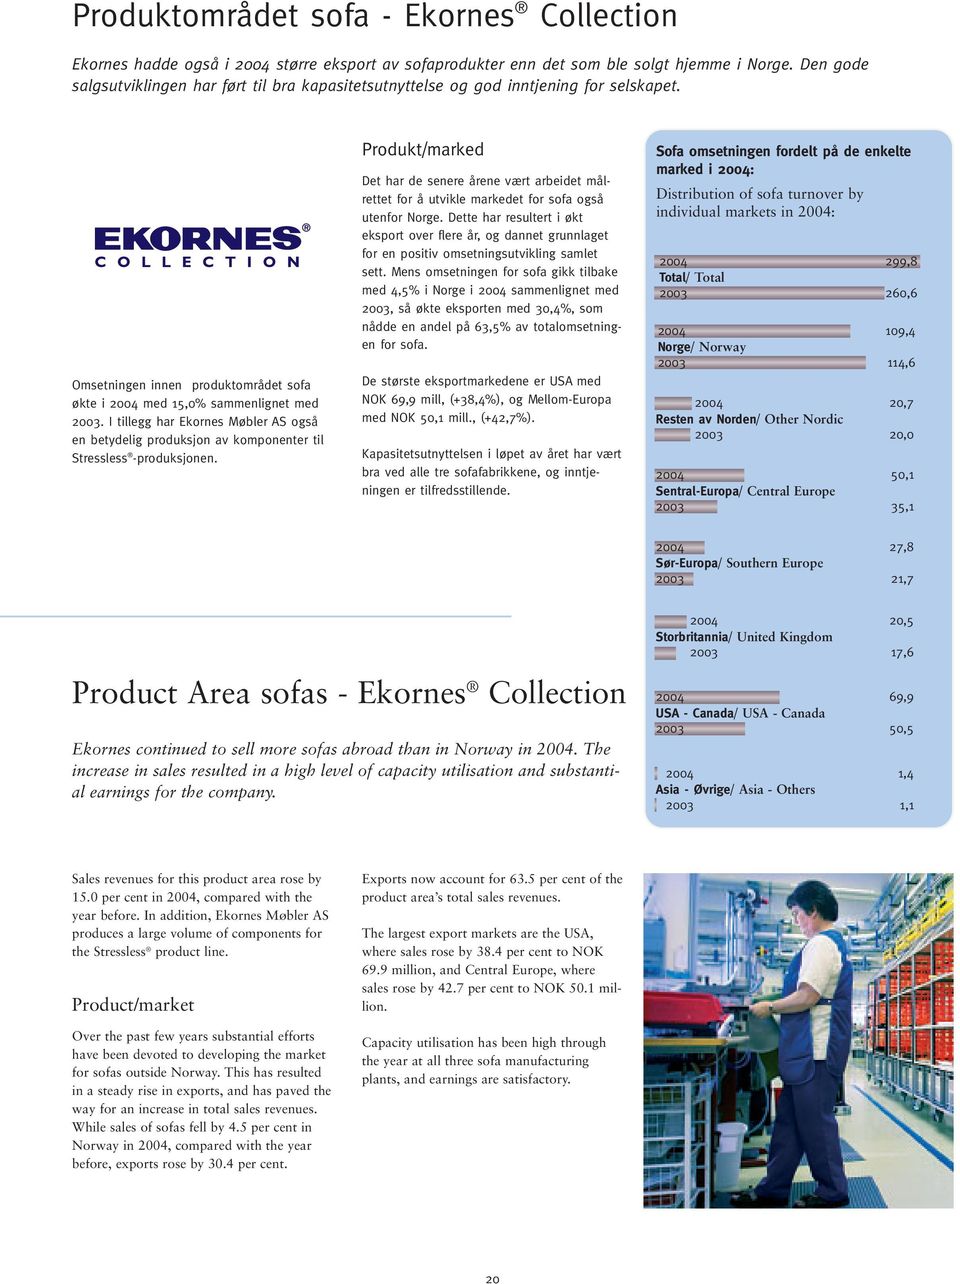 I tillegg har Ekornes Møbler AS også en betydelig produksjon av komponenter til Stressless -produksjonen.